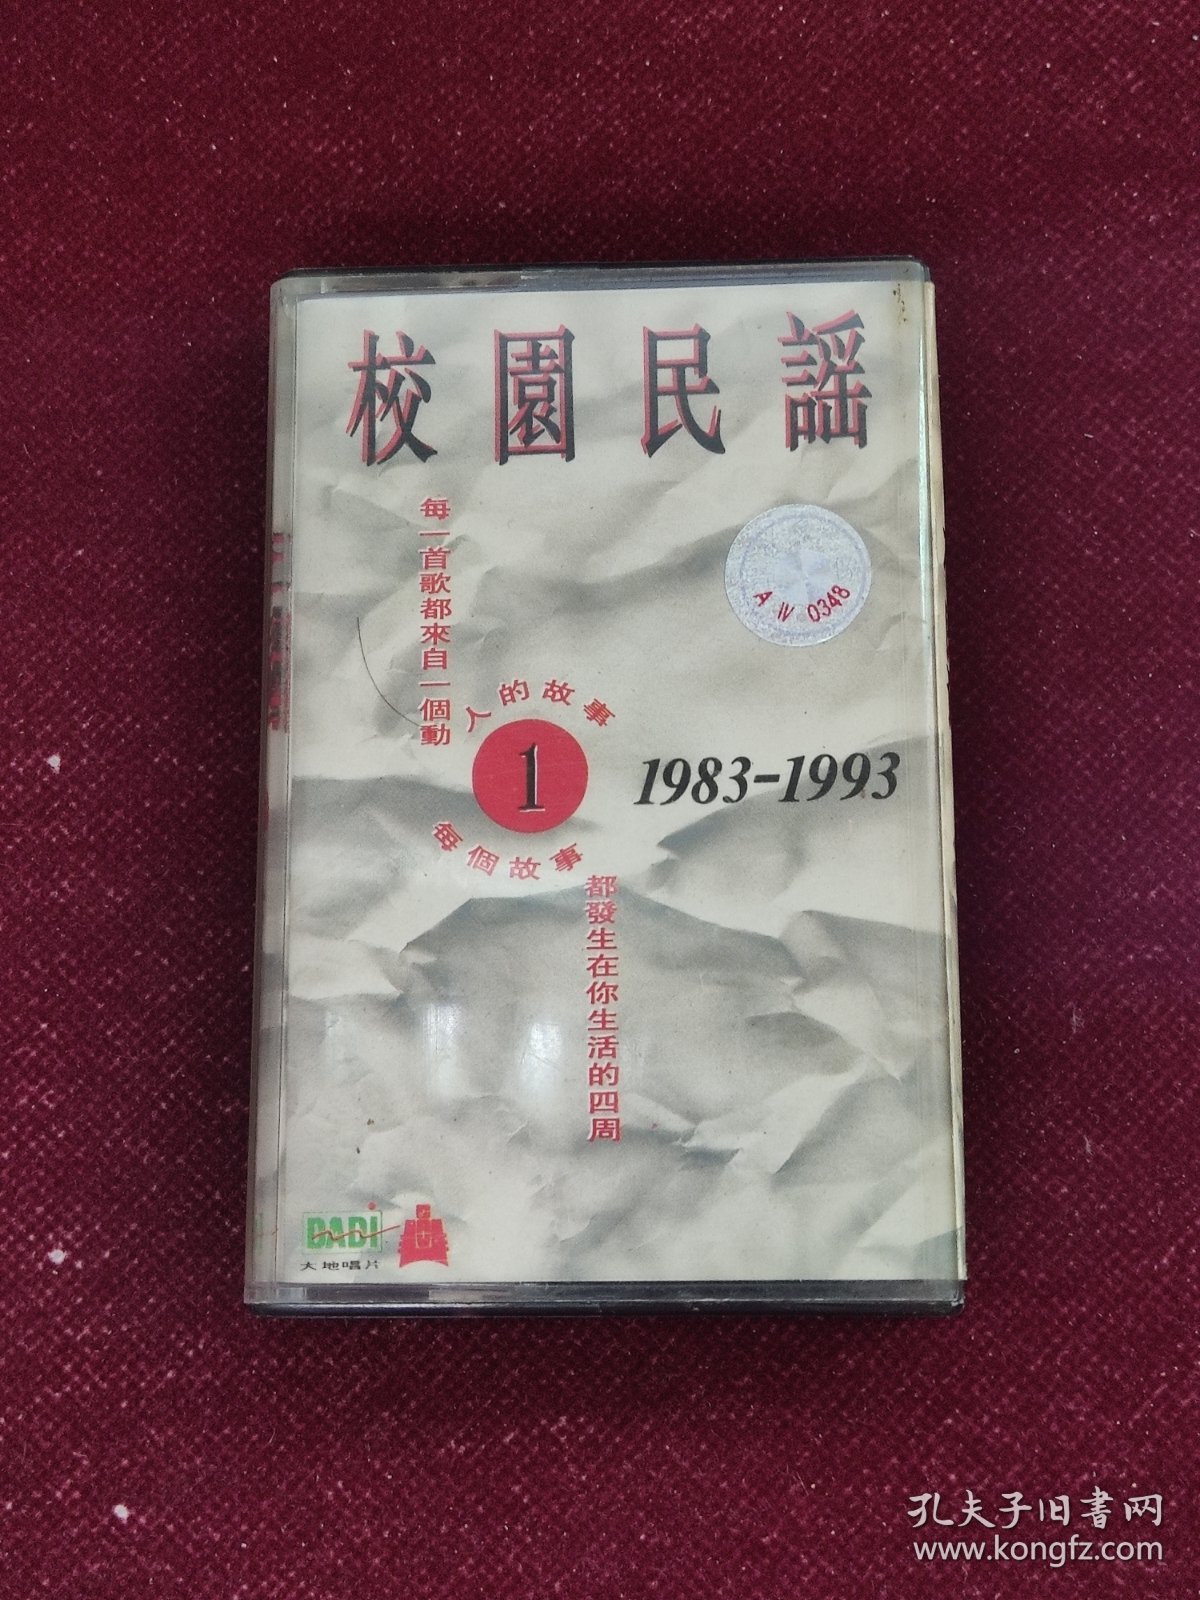 校园民谣1（1983-1993）磁带 每一首歌都来自一个人的故事 每个故事都发生在你生活的四周 怀旧收藏